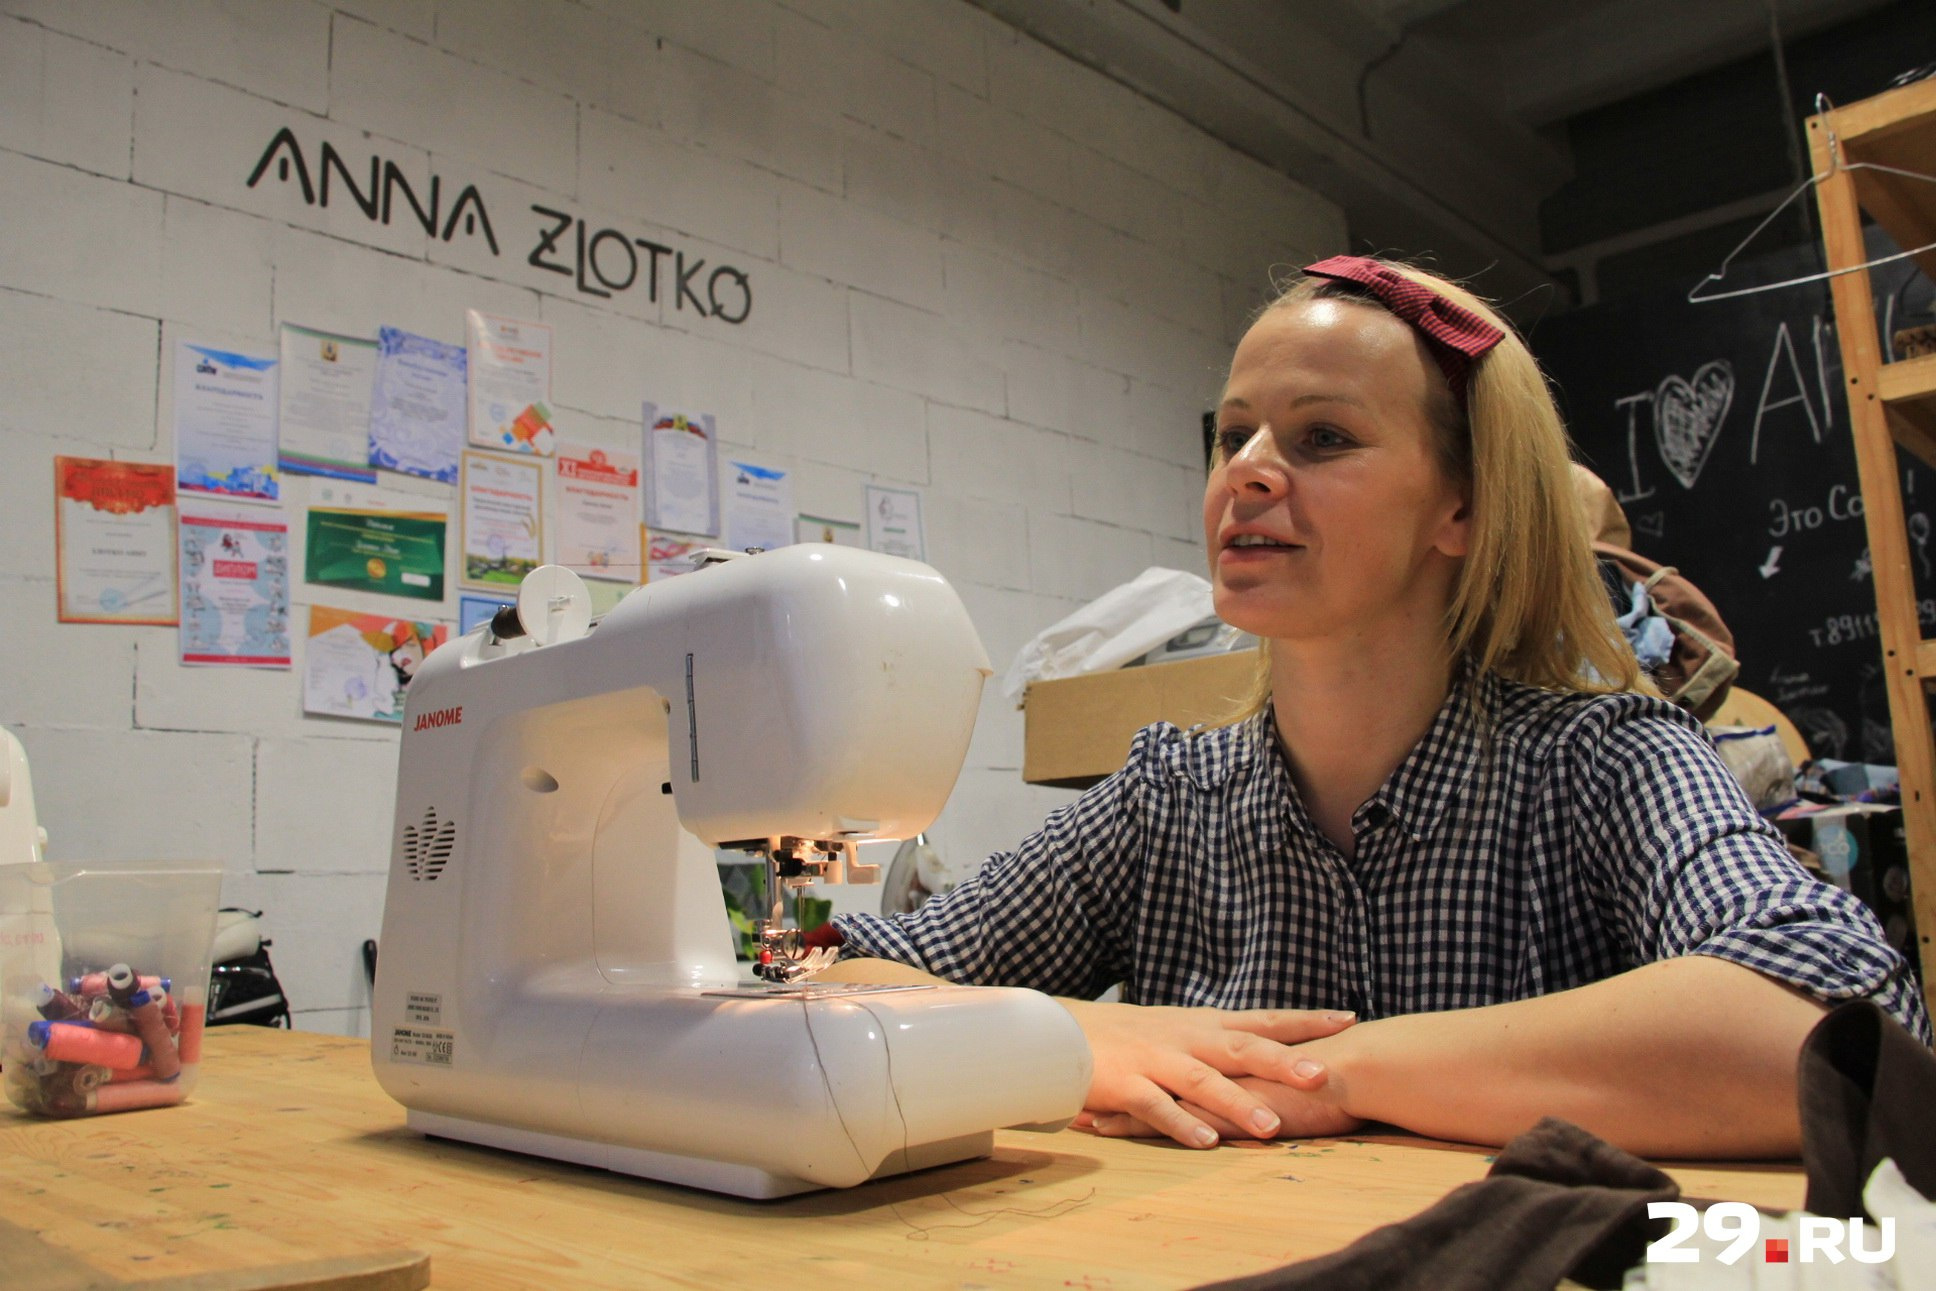 Дизайнер-модельер Анна Злотко в этом году будет трудиться в большем объеме - у нее появились помощницы